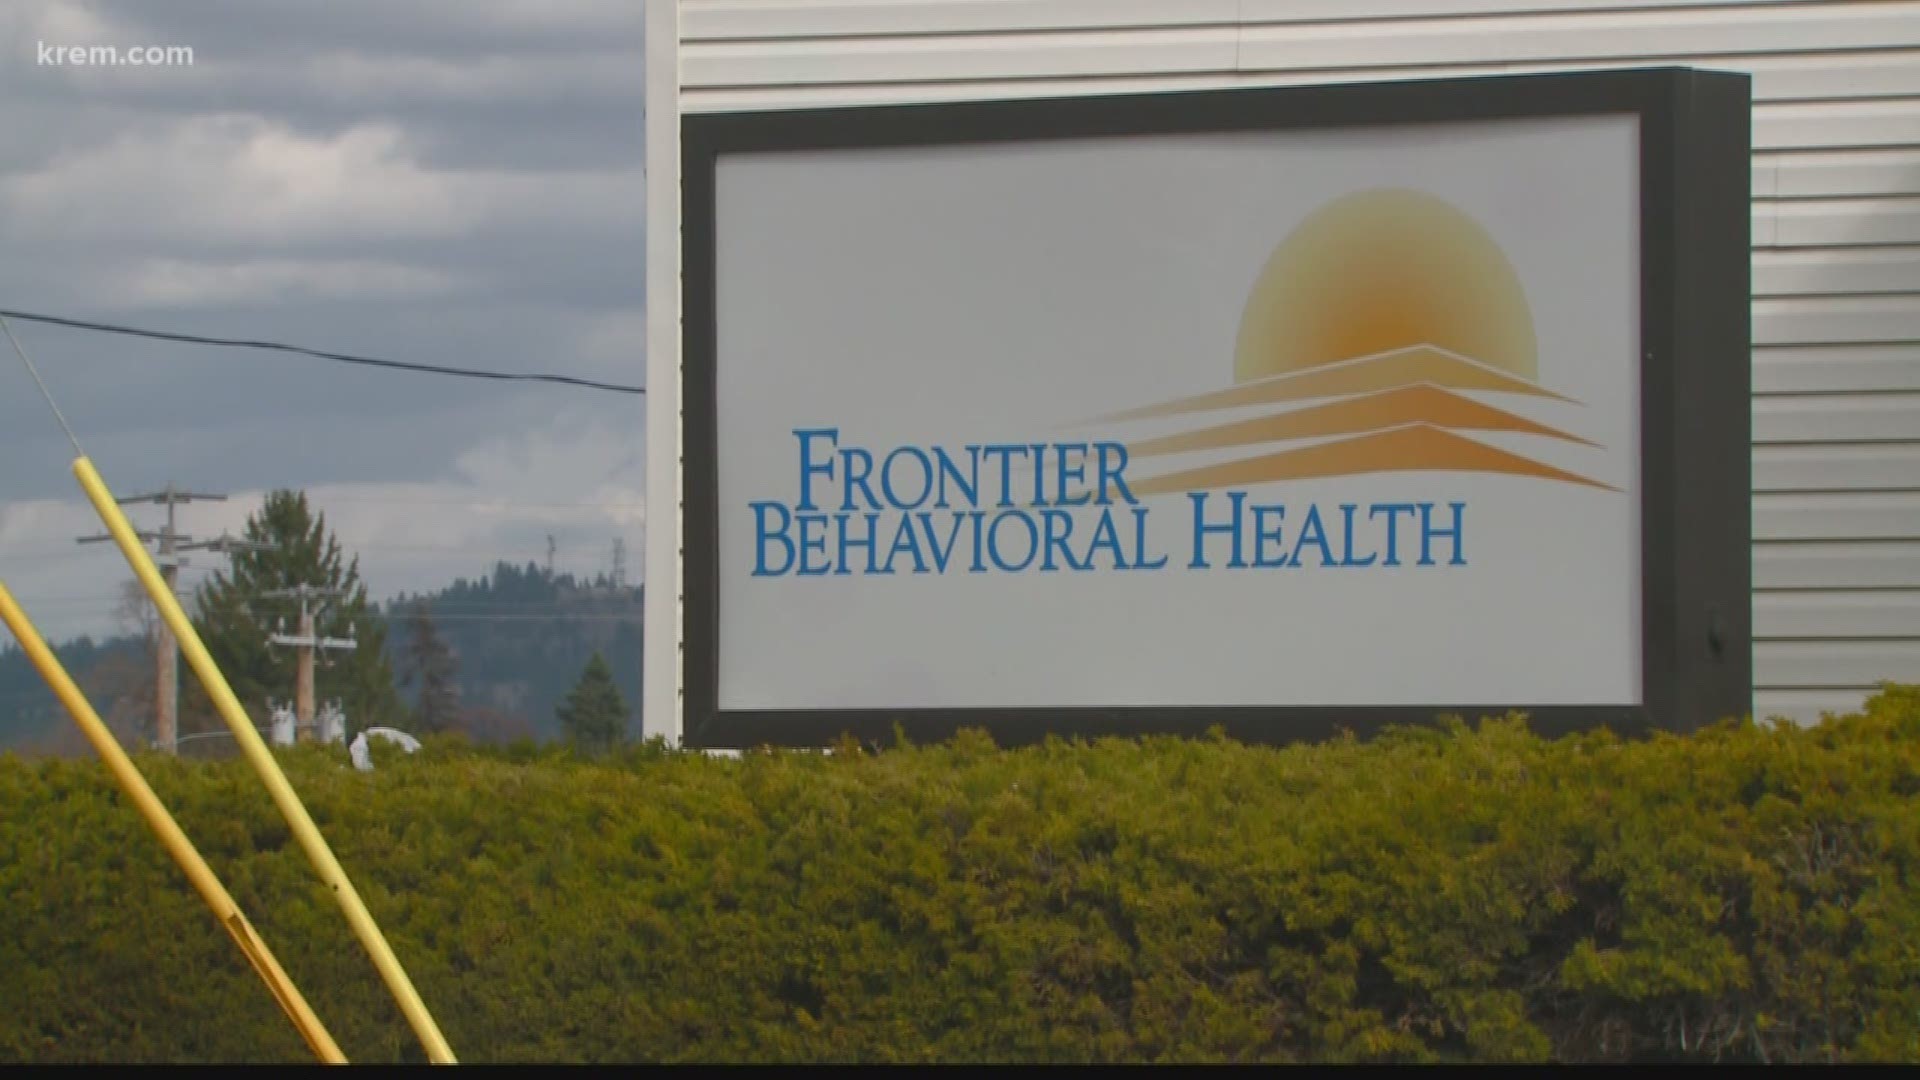 Spokane Expert Gives Advice On Mental Health During Isolation Kremcom